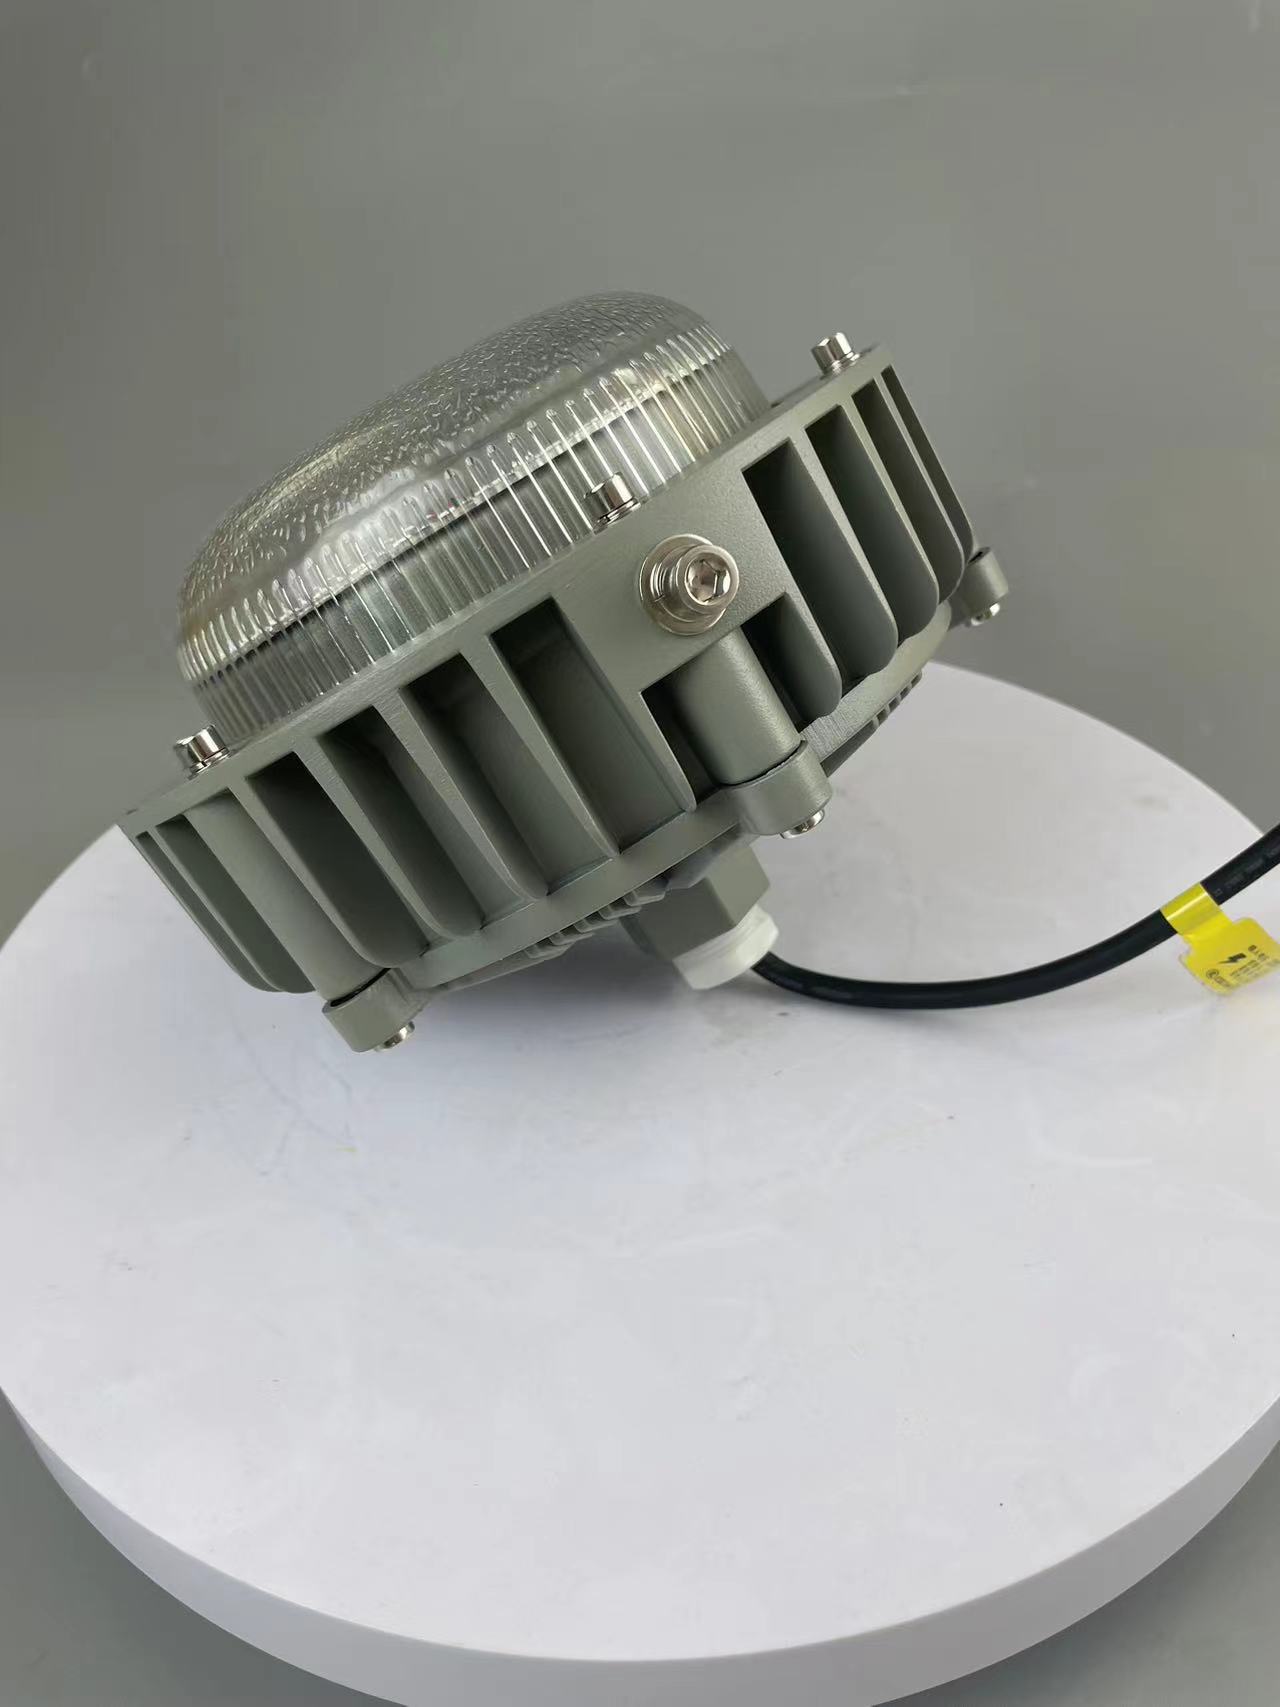 HRD58-24免维护防爆LEDHRD58-24免维护防爆LED铝合金材质进口LED光源高光效